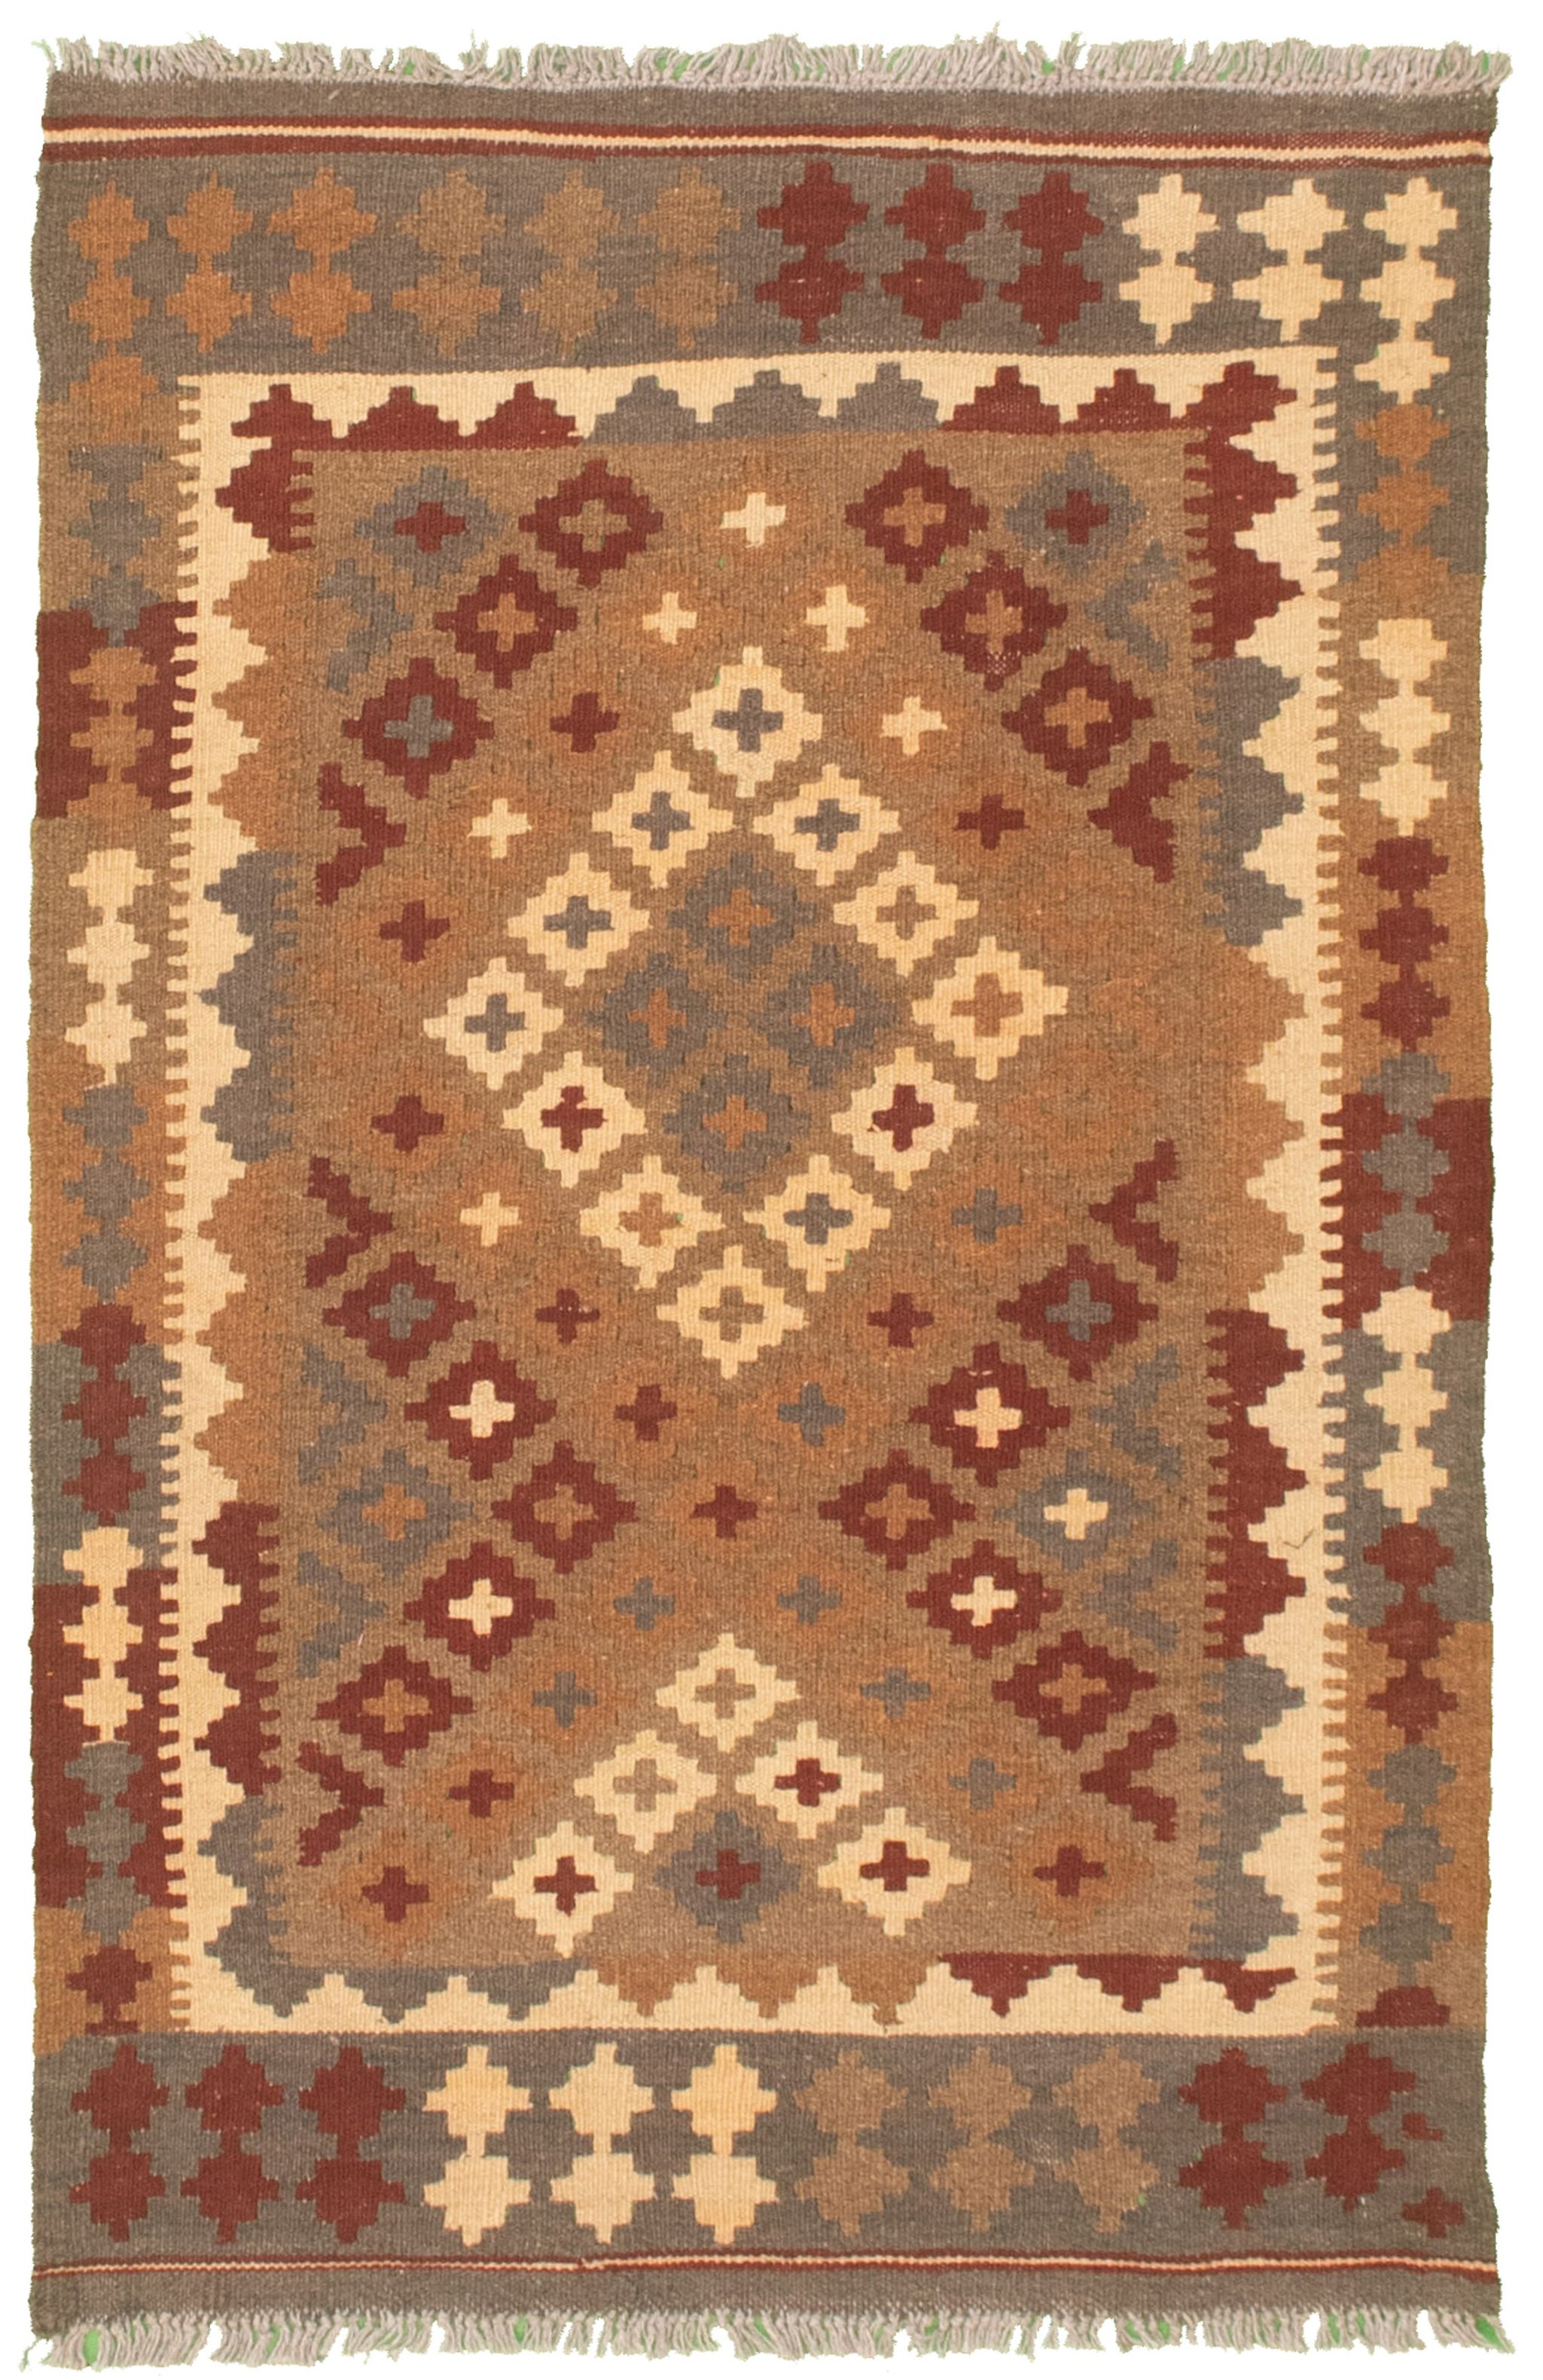 Hand woven Kashkoli FW Brown Cotton Kilim 2'9" x 4'3" Size: 2'9" x 4'3"  